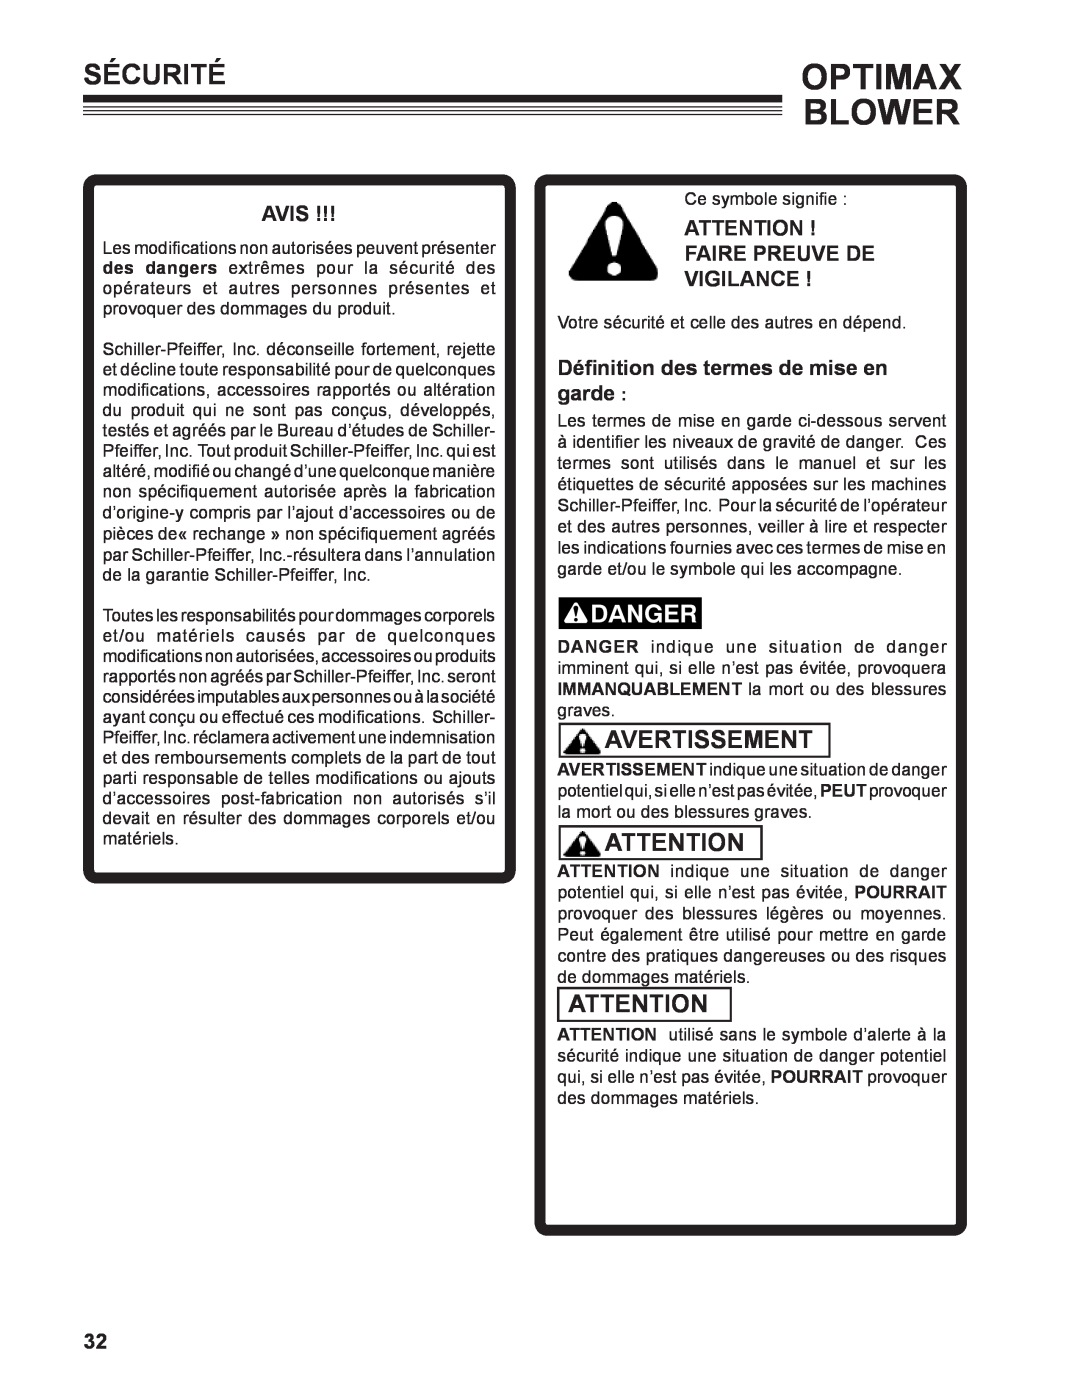 Little Wonder LB601-00-01 technical manual Sécuritéoptimax, Avertissement, Avis, Faire Preuve De Vigilance , Blower 